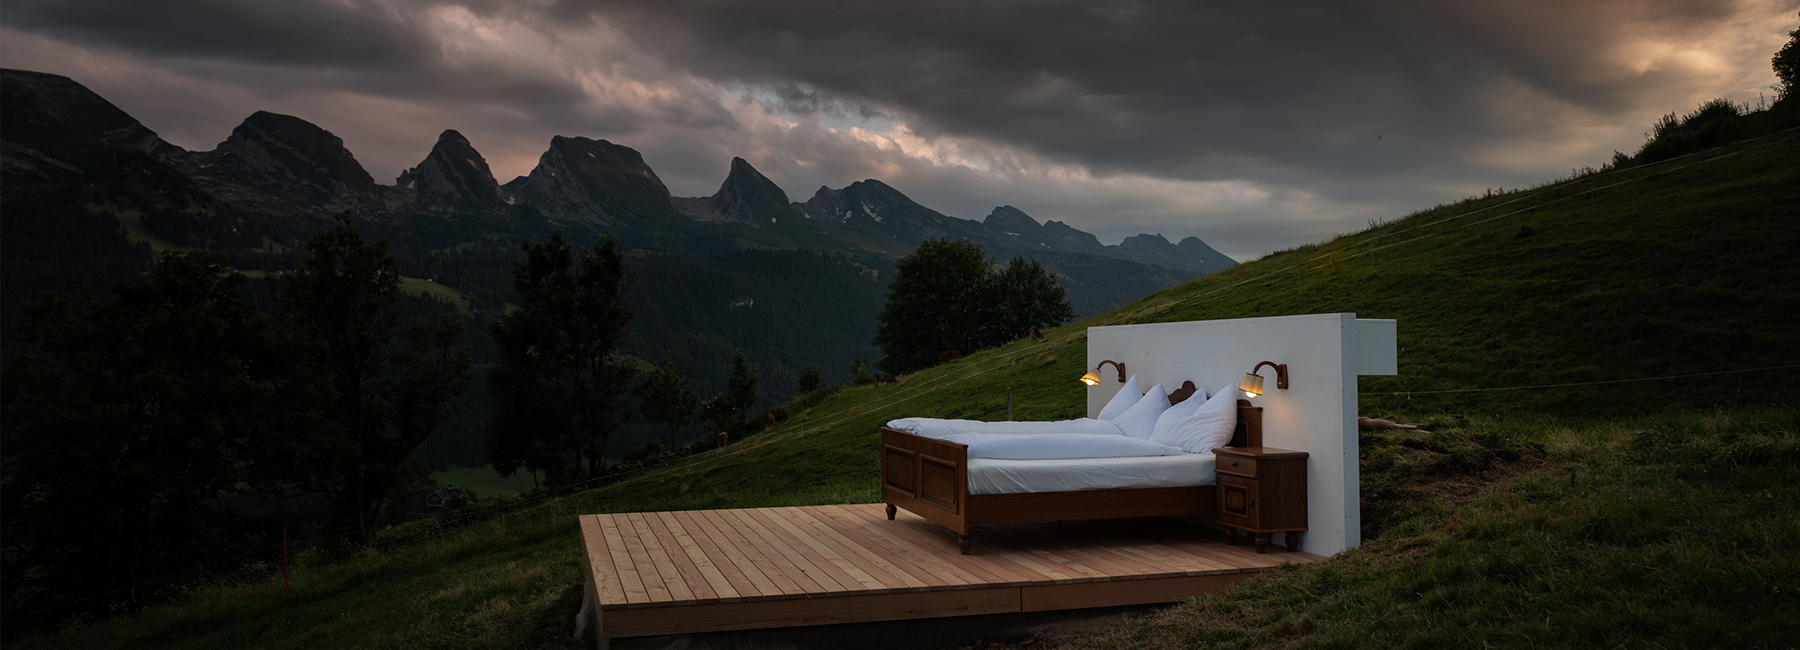 هتلی بدون سقف با پس زمینه ای از آسمان و دره ای در سوئیس